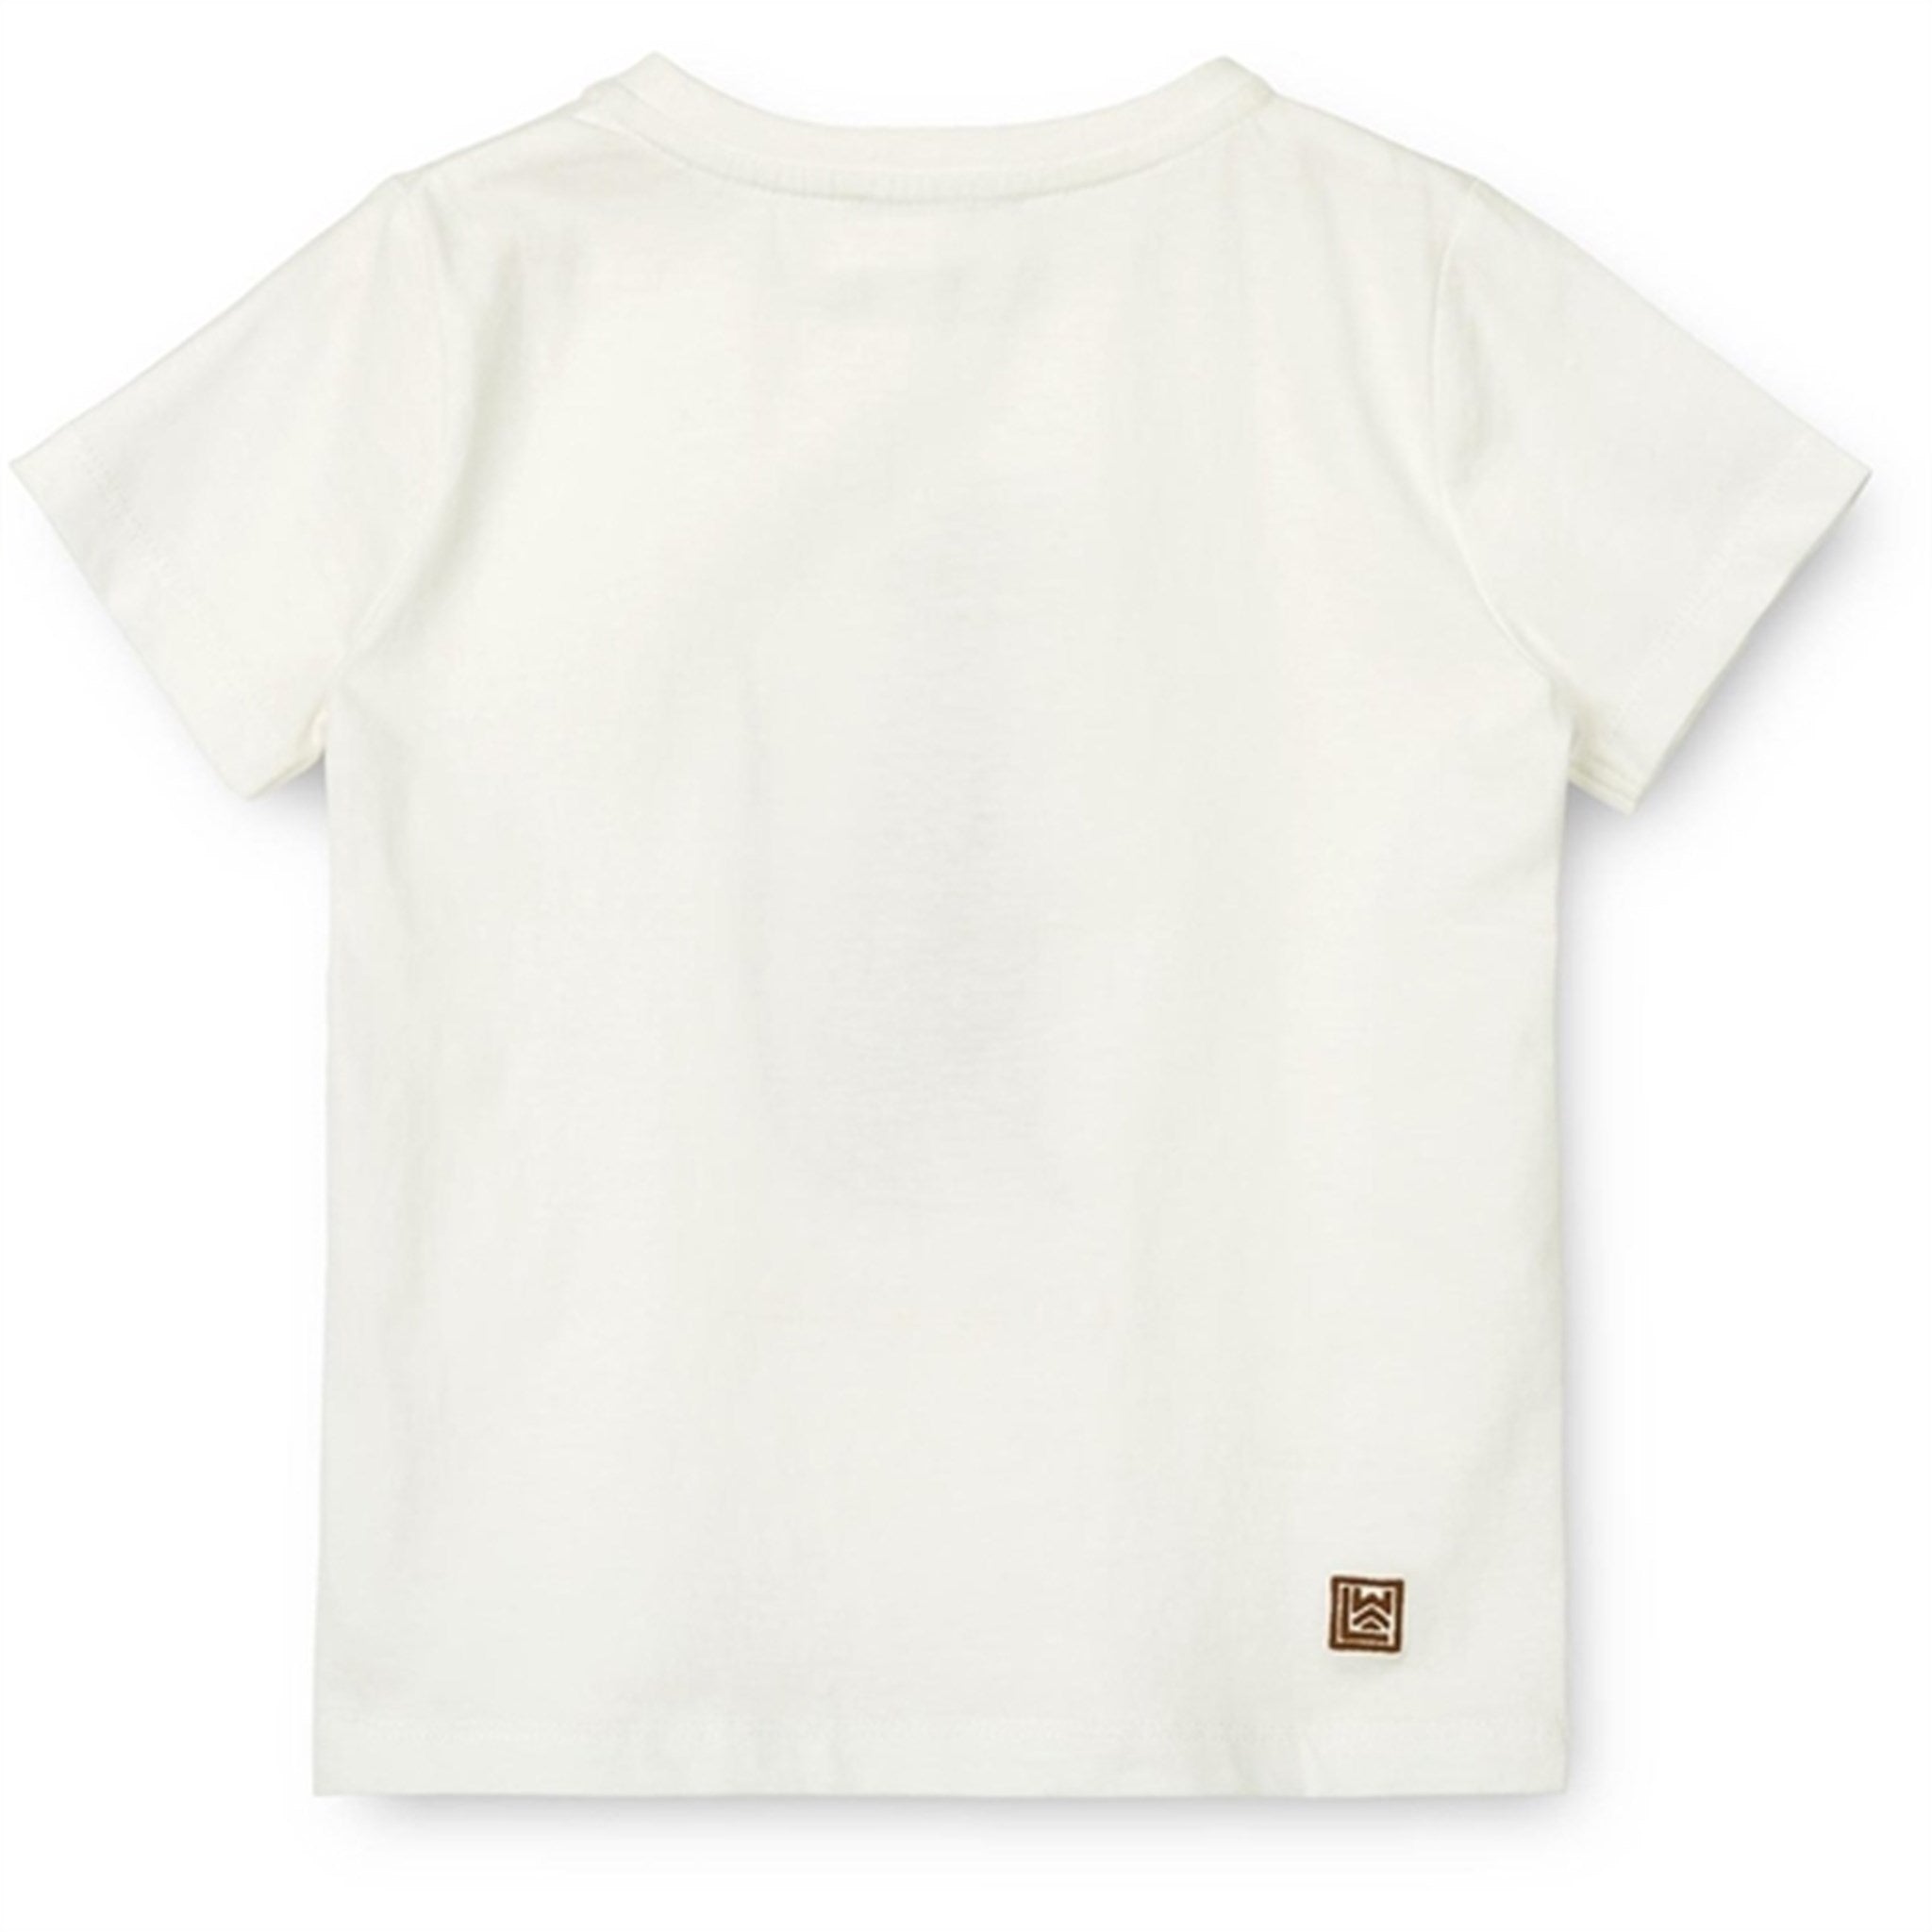 Liewood Leopard/Crisp White Apia Placement T-shirt 2